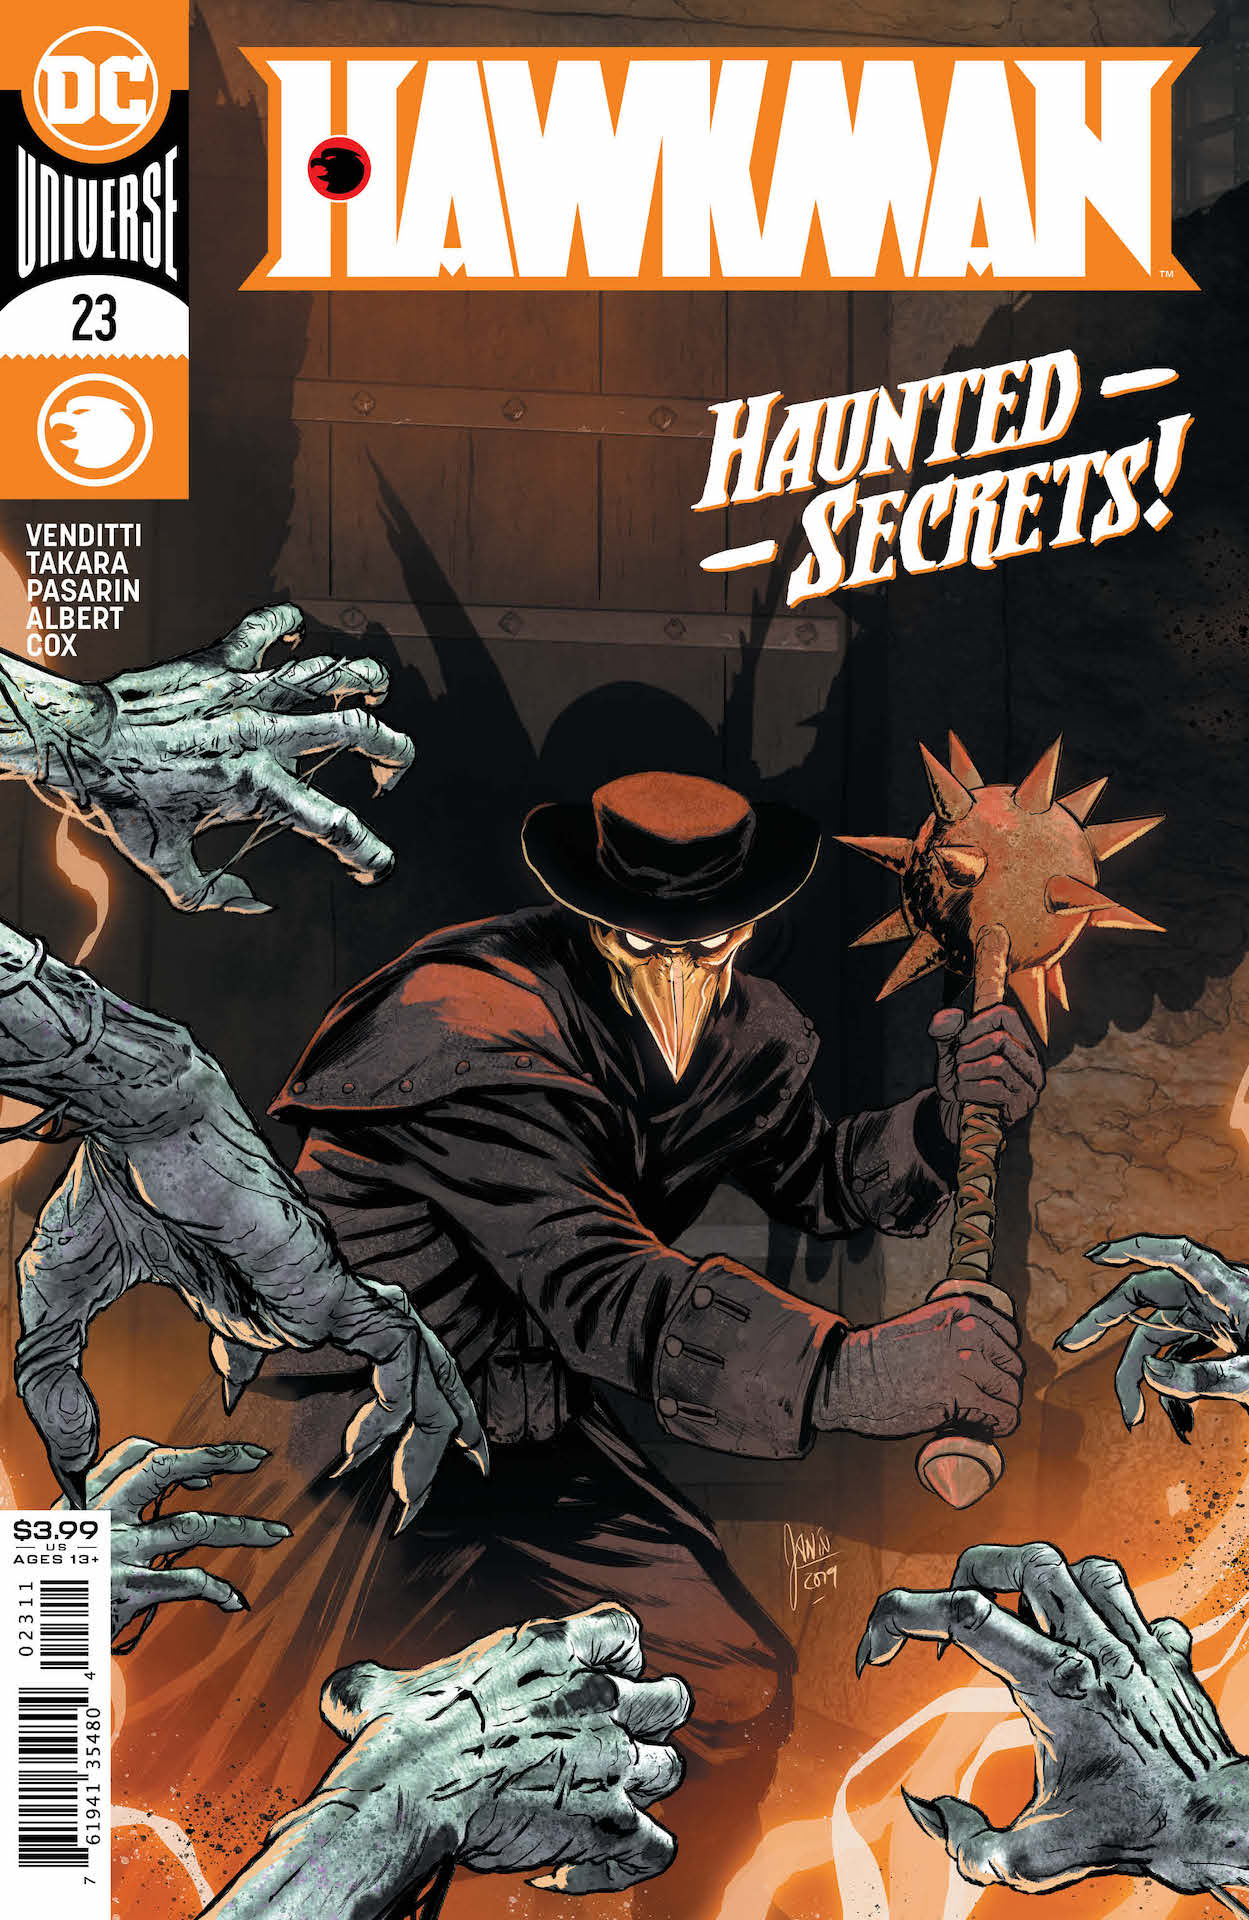 DC Preview: Hawkman #23